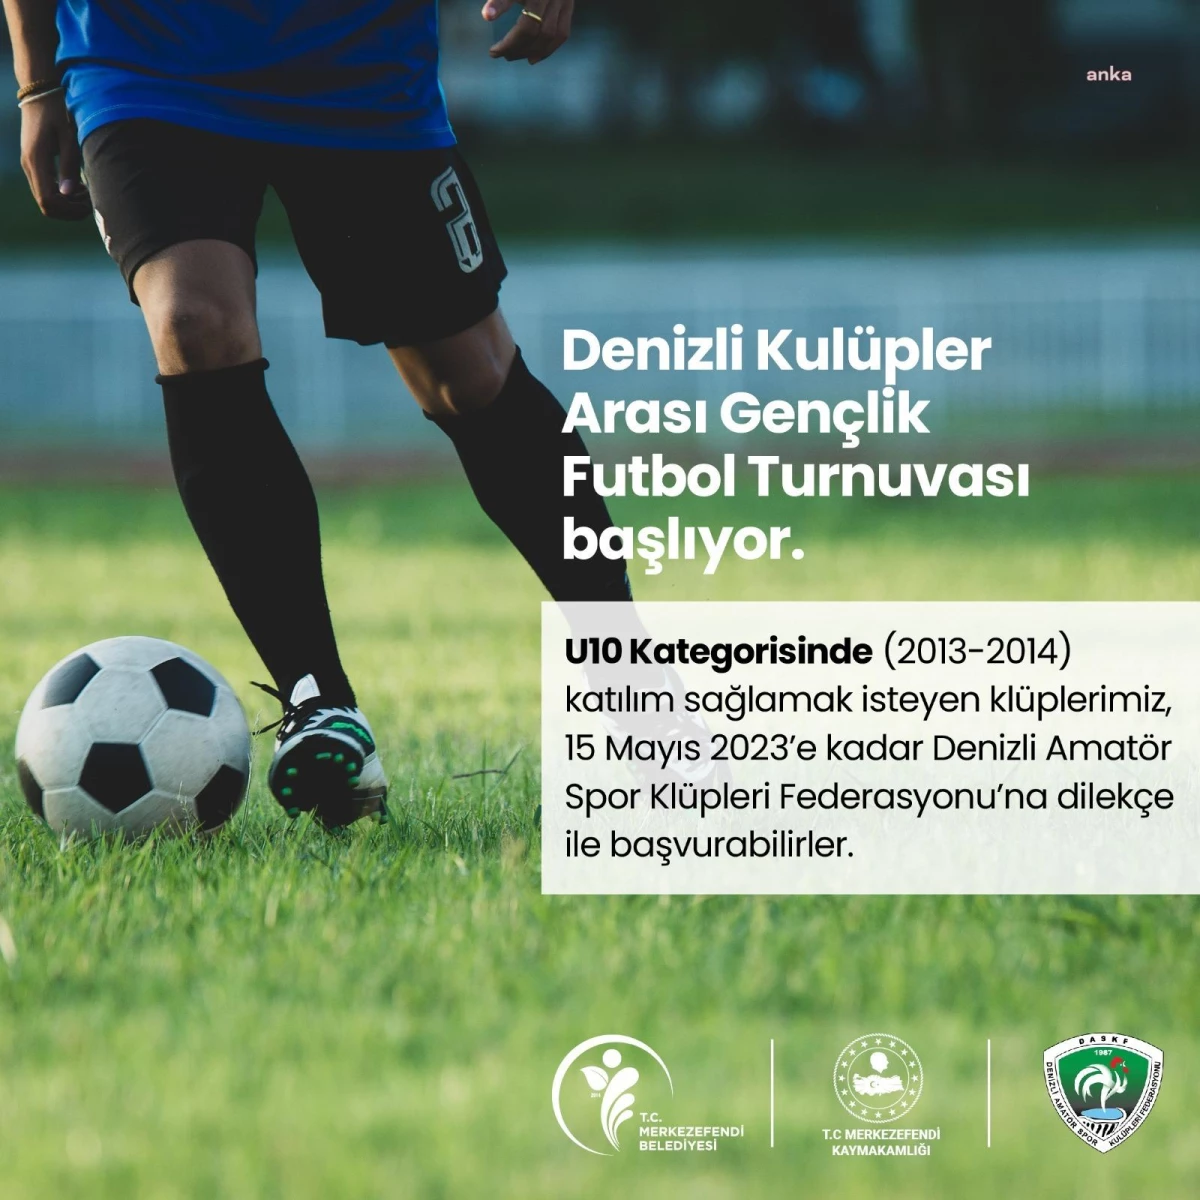 Merkezefendi'de 19 Mayıs Gençlik Futbol Turnuvası düzenlenecek